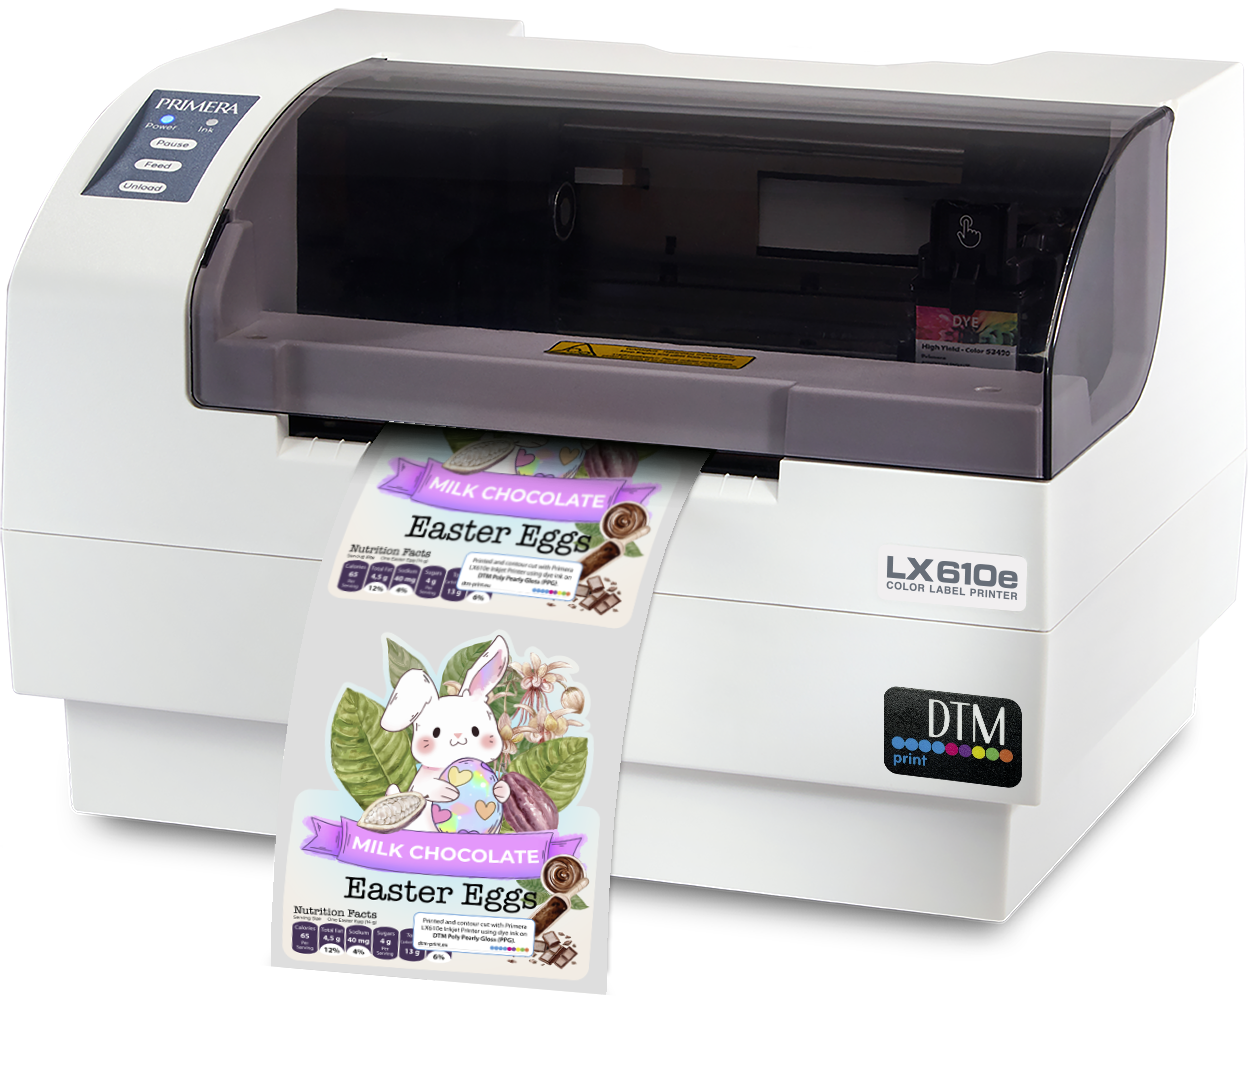 LX610e Pro Colour Label Printer